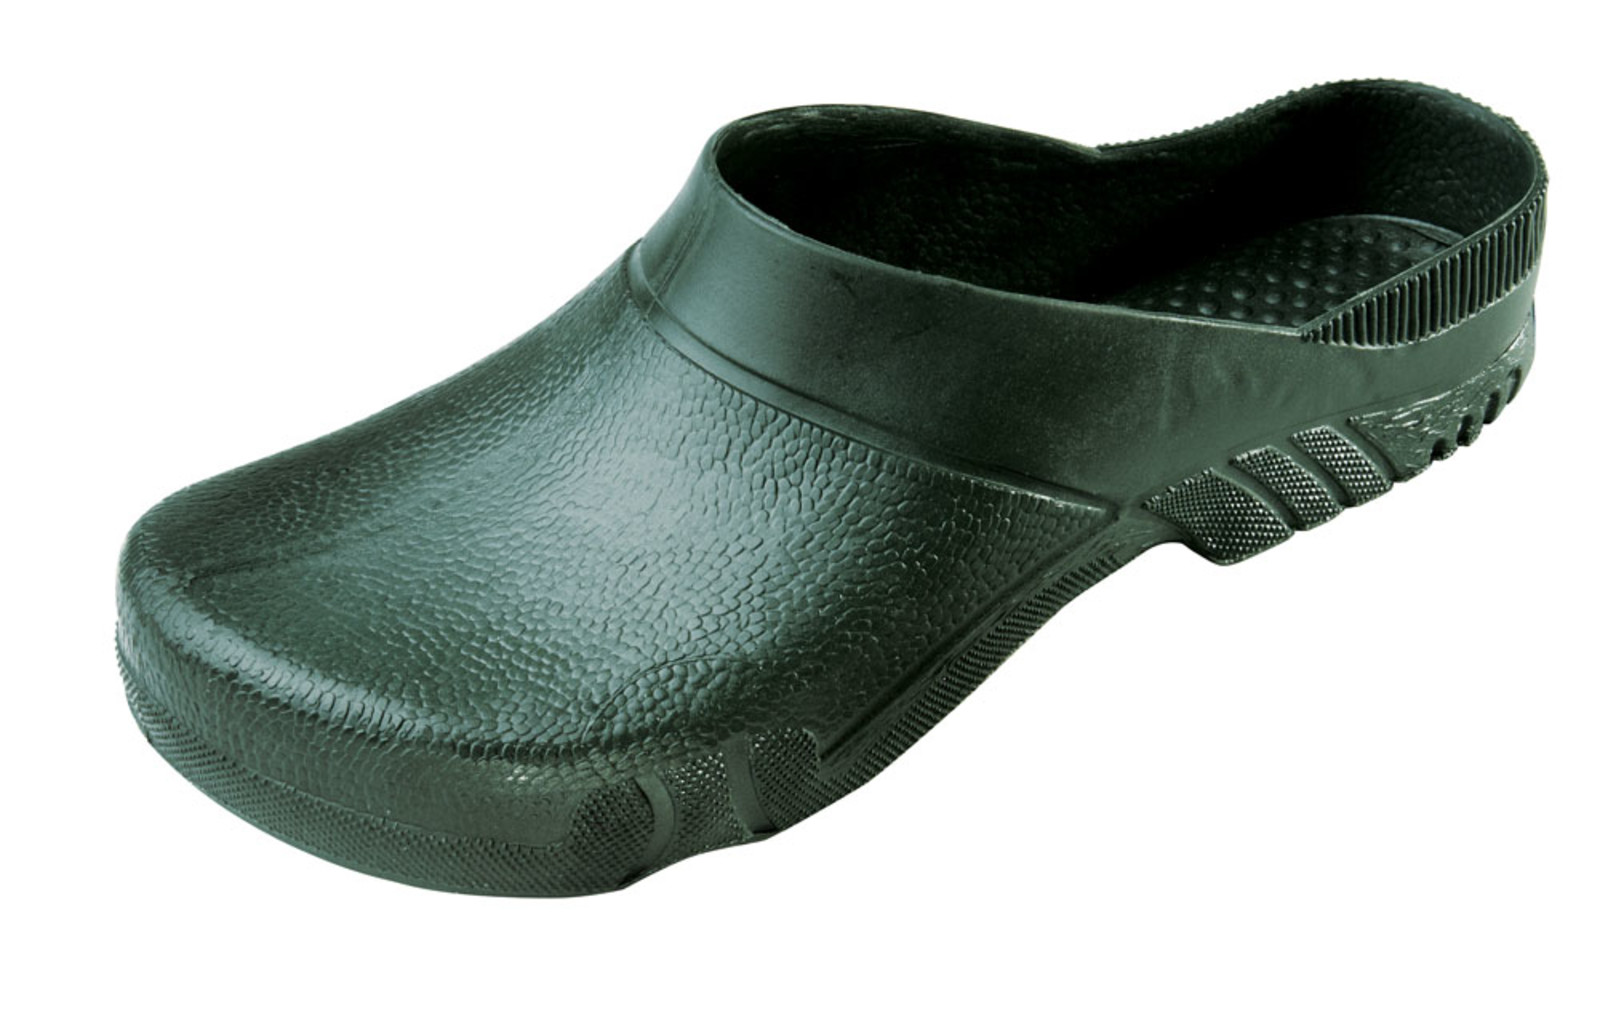 Galoše Boots Birba  - veľkosť: 45-46, farba: olivová zelená